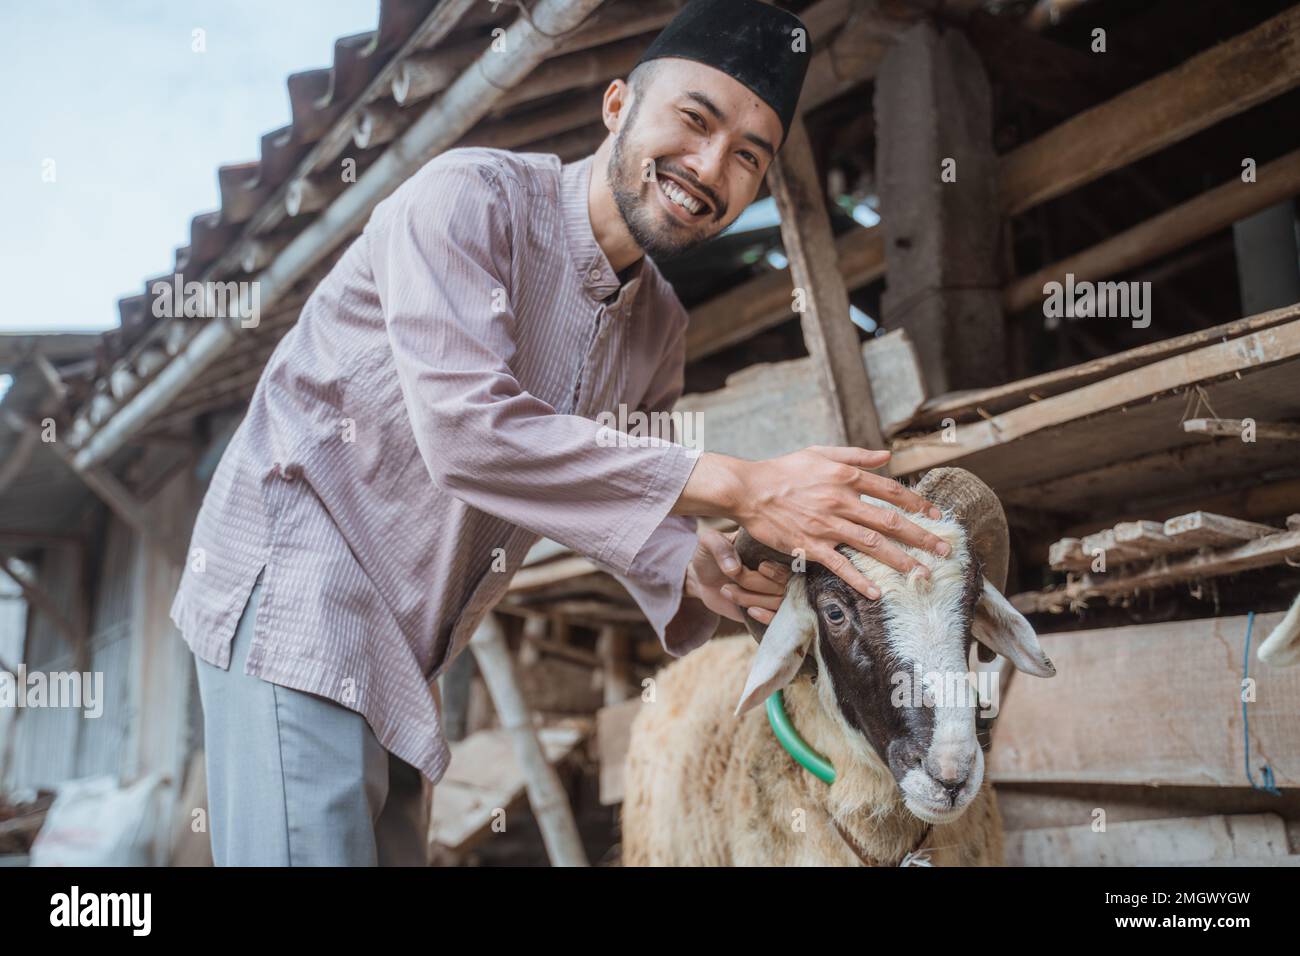 un homme musulman debout avec le sourire et qui a bougé la tête de la chèvre Banque D'Images